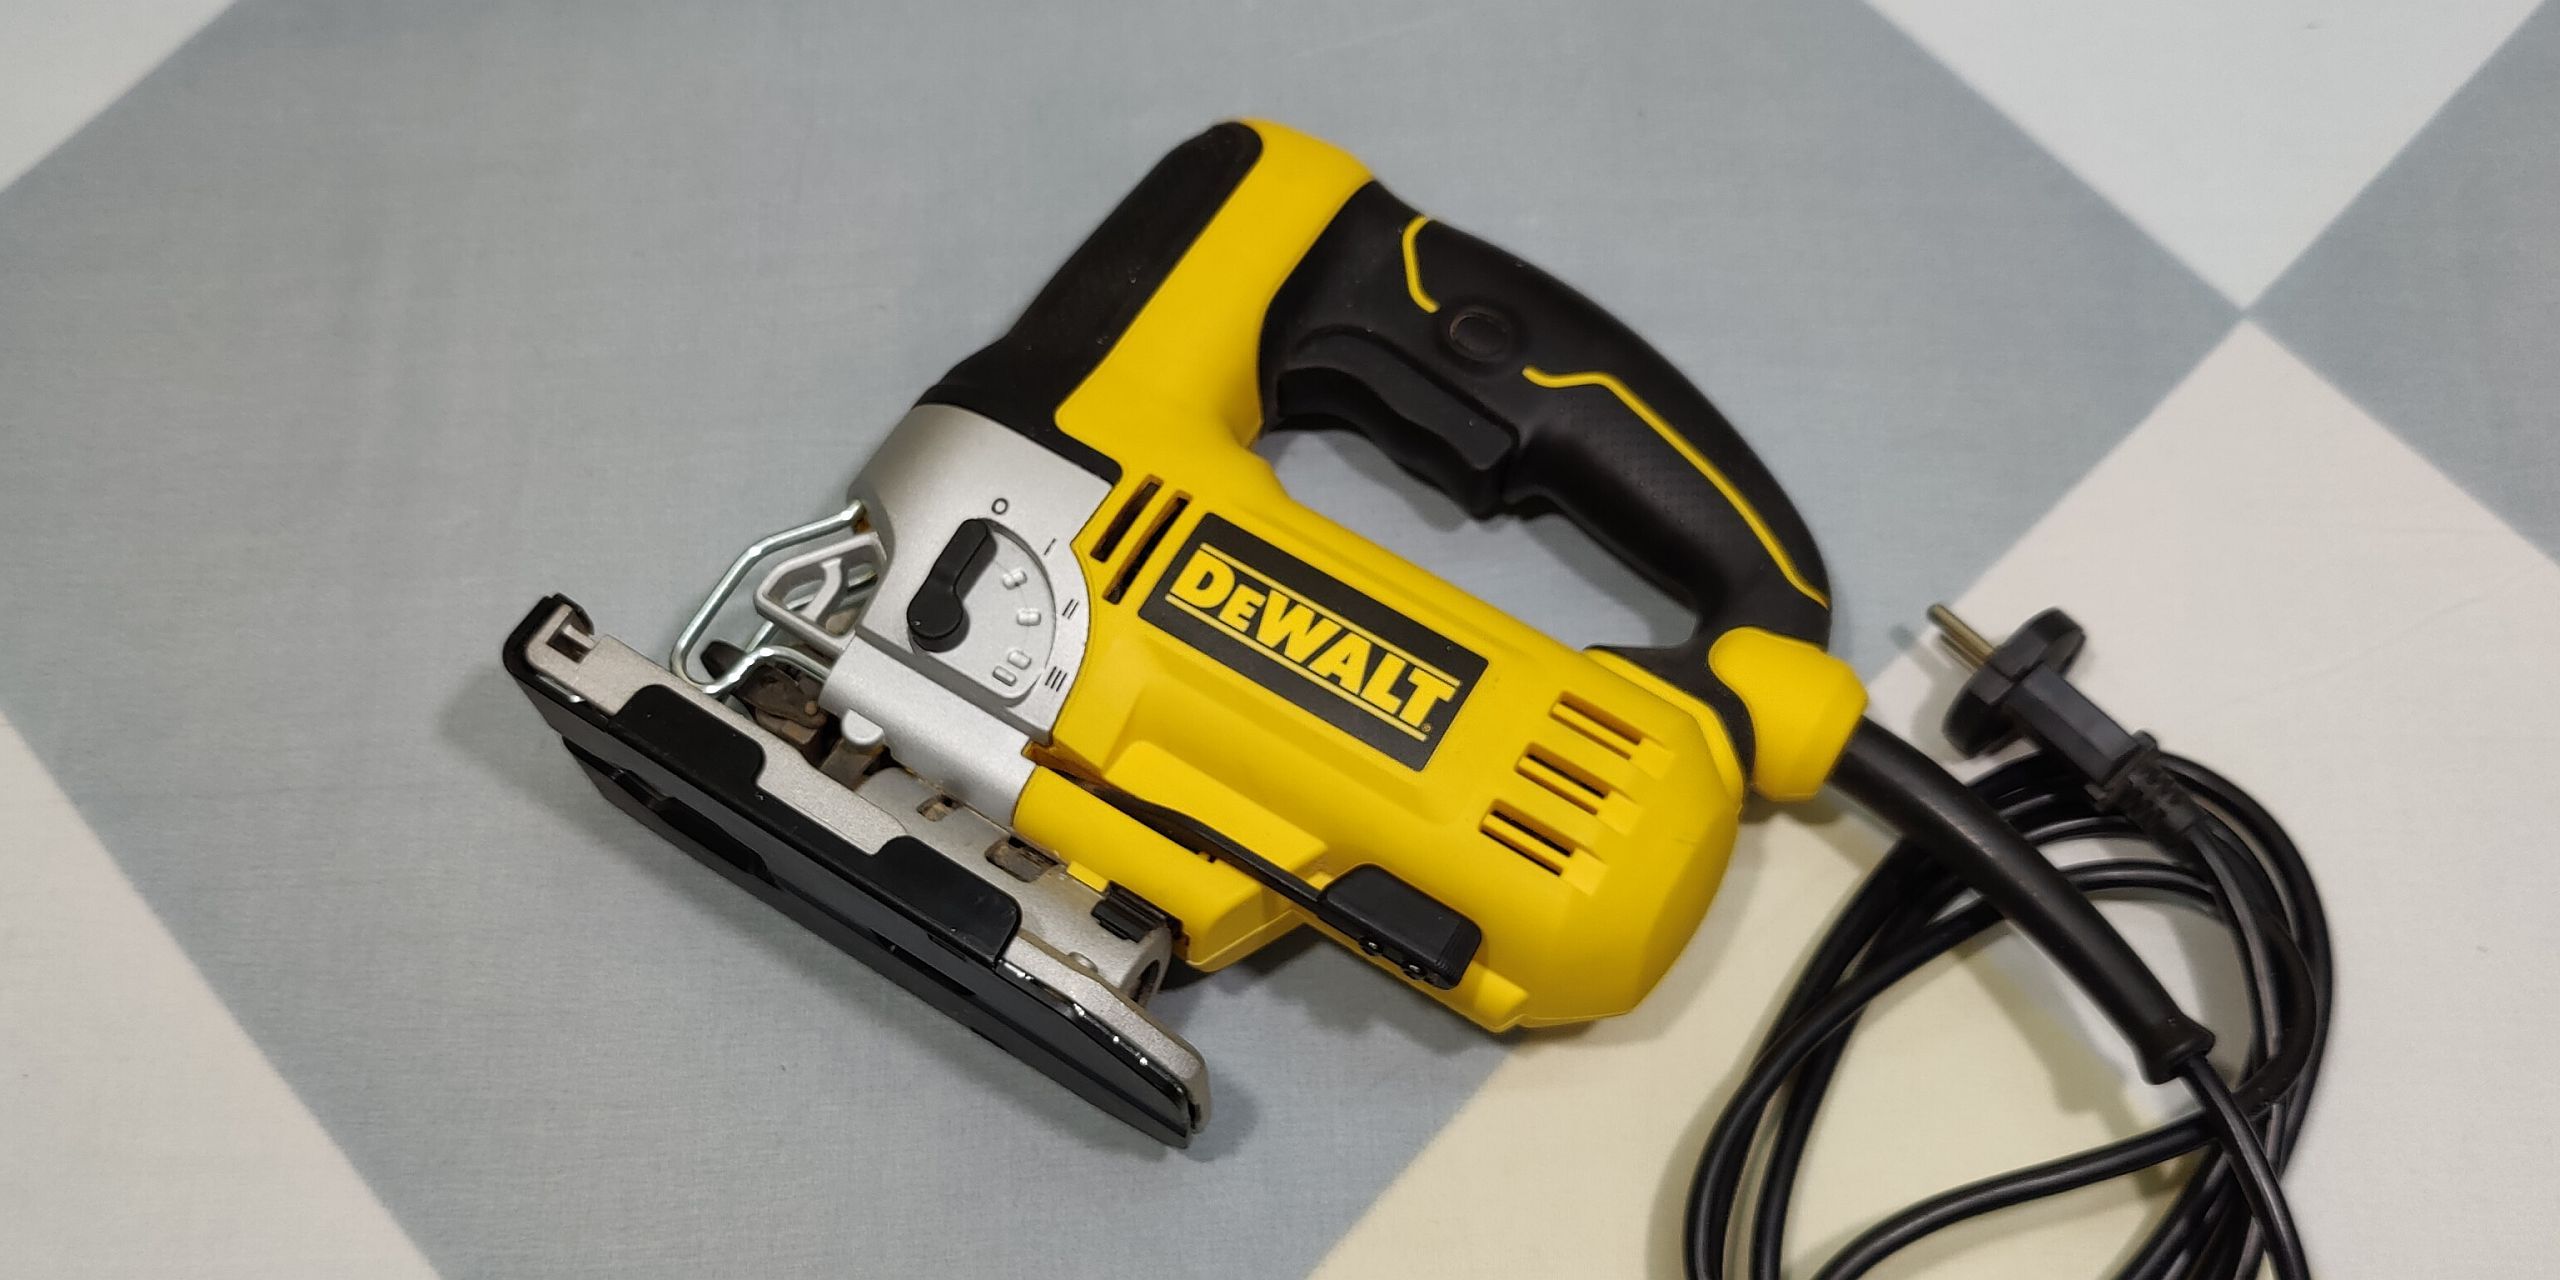 DeWalt jigsaw power tool